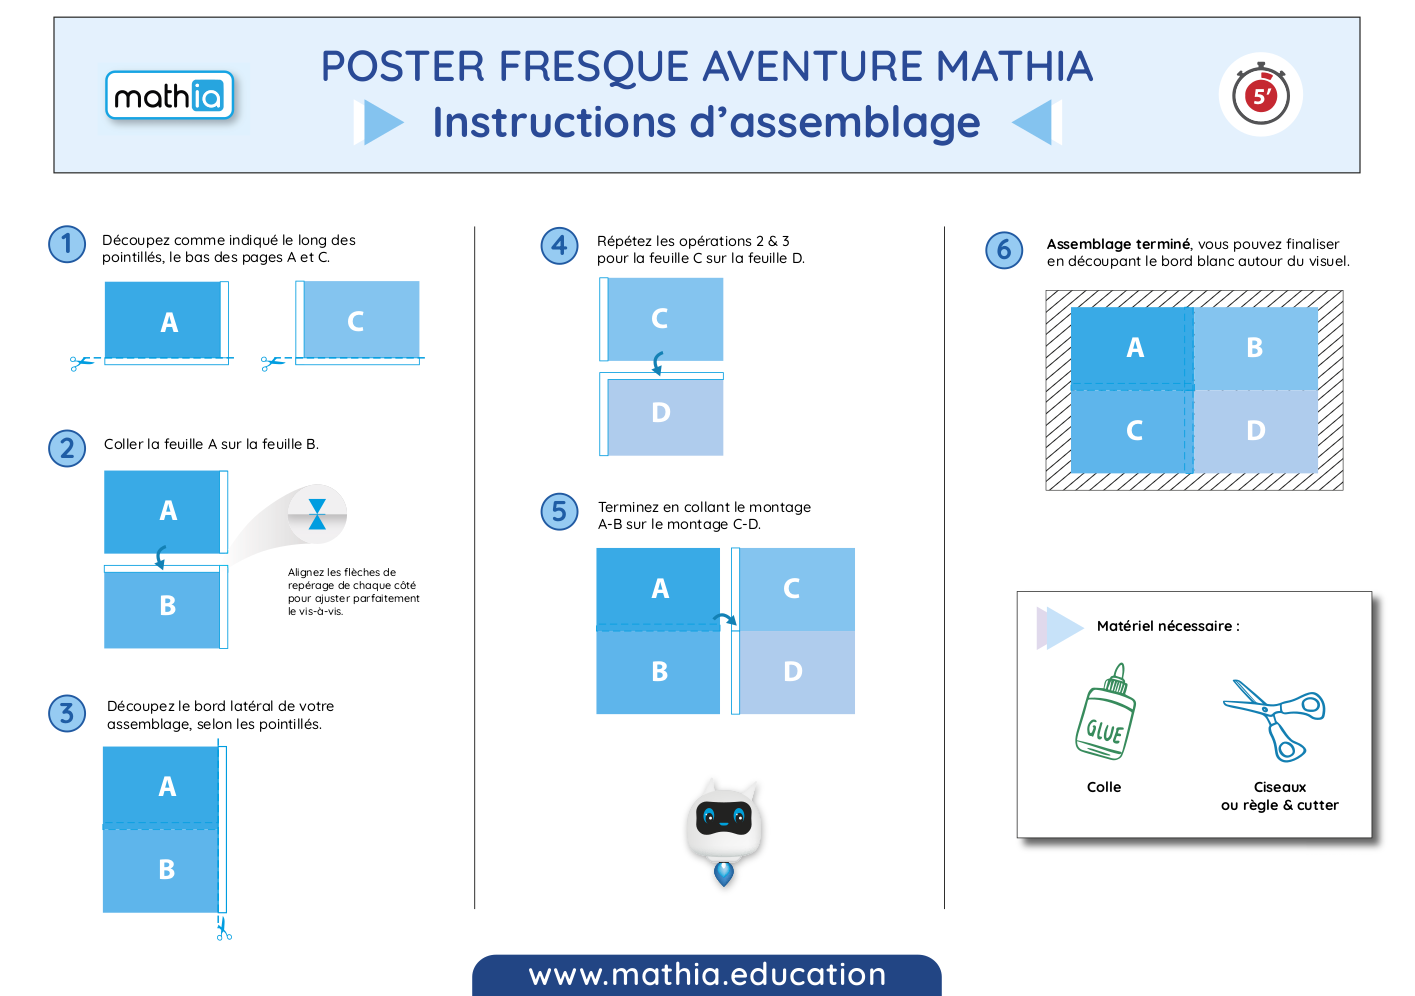 Instructions d'assemblage du poster Mathia